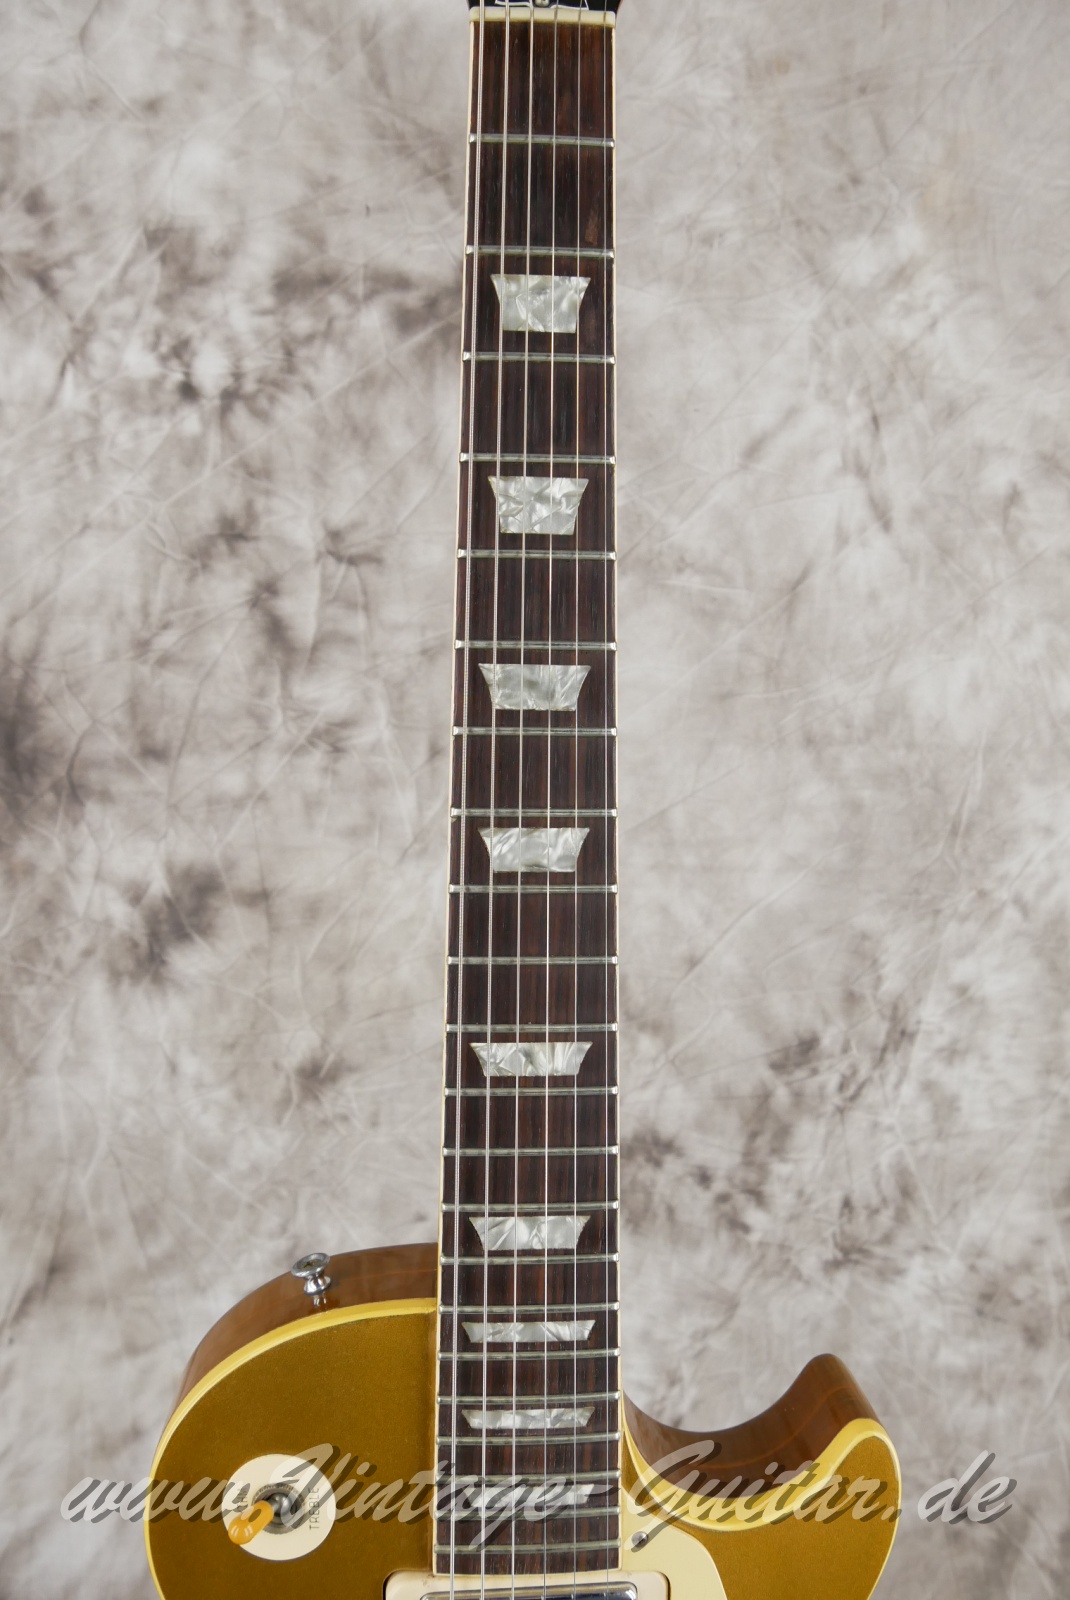 Gibson_Les Paul_Deluxe_Goldtop_1969_1970-005.JPG